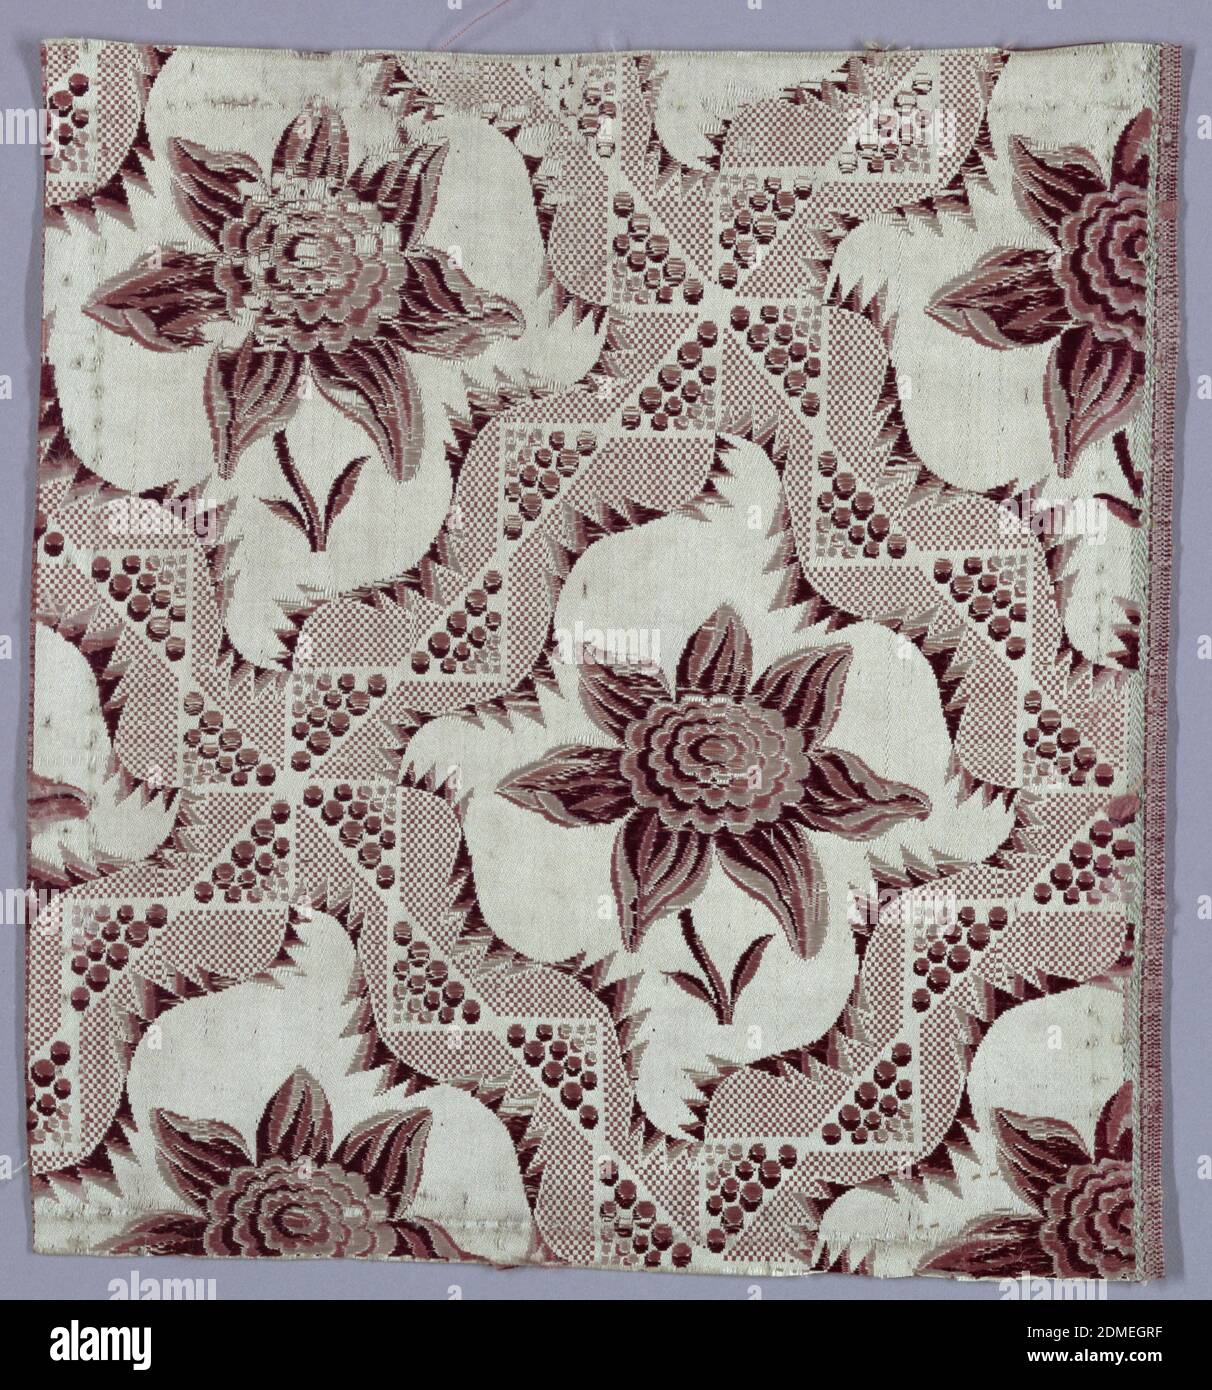 Textile, soie, XIXe siècle, textiles tissés, textile Banque D'Images